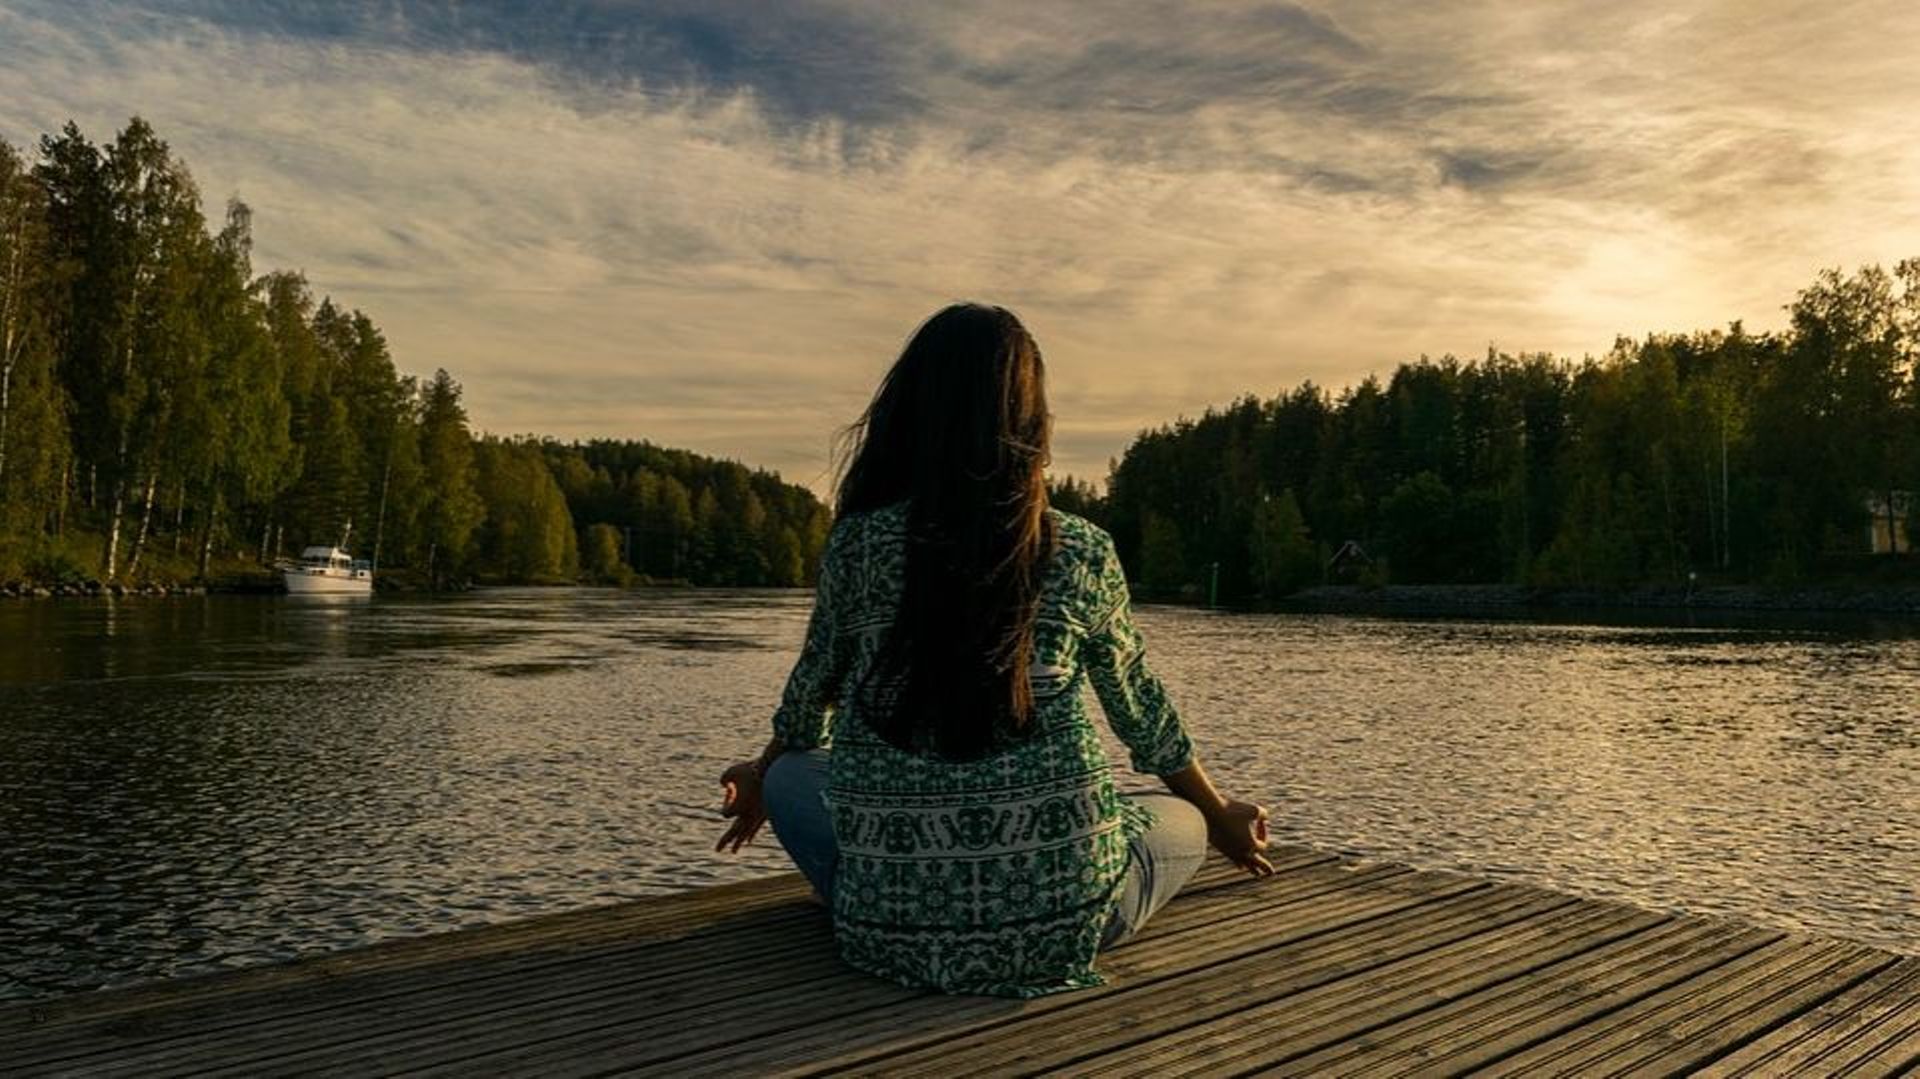 comment-la-meditation-peut-changer-le-monde